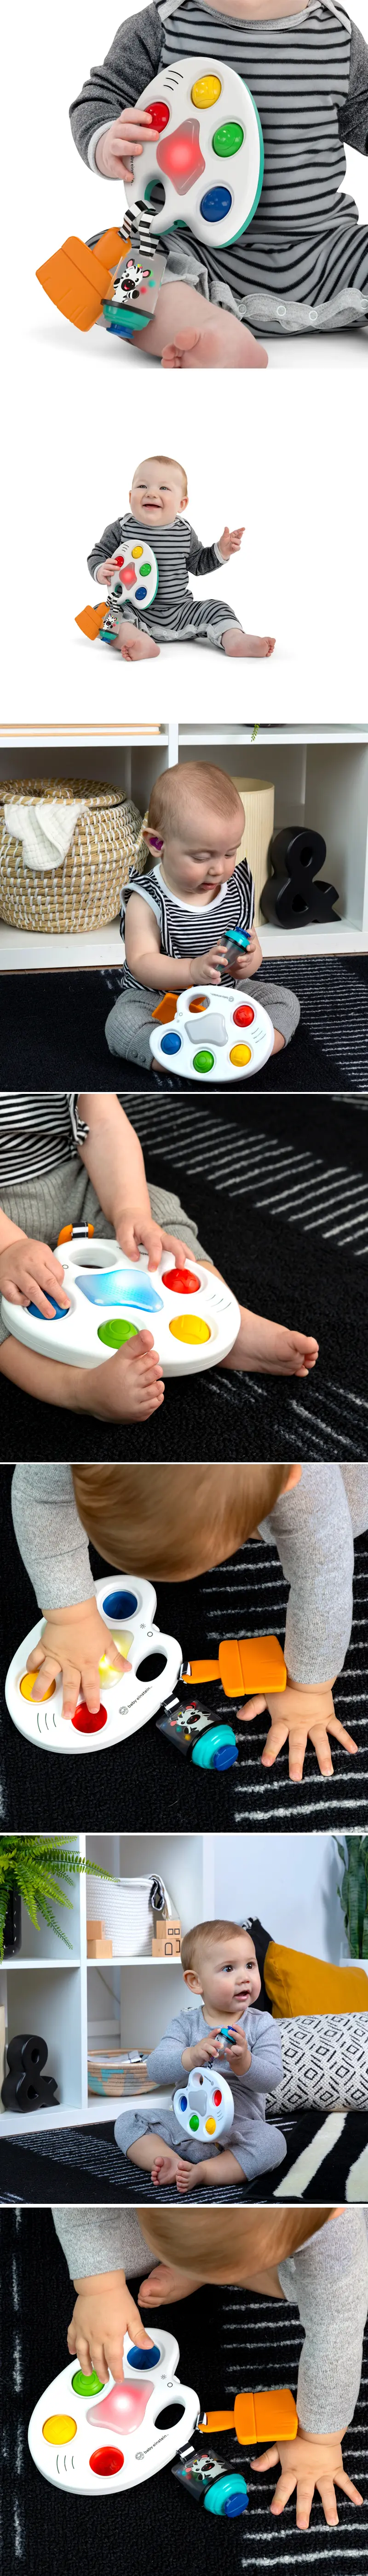 Baby Einstein 按壓調色盤感官玩具